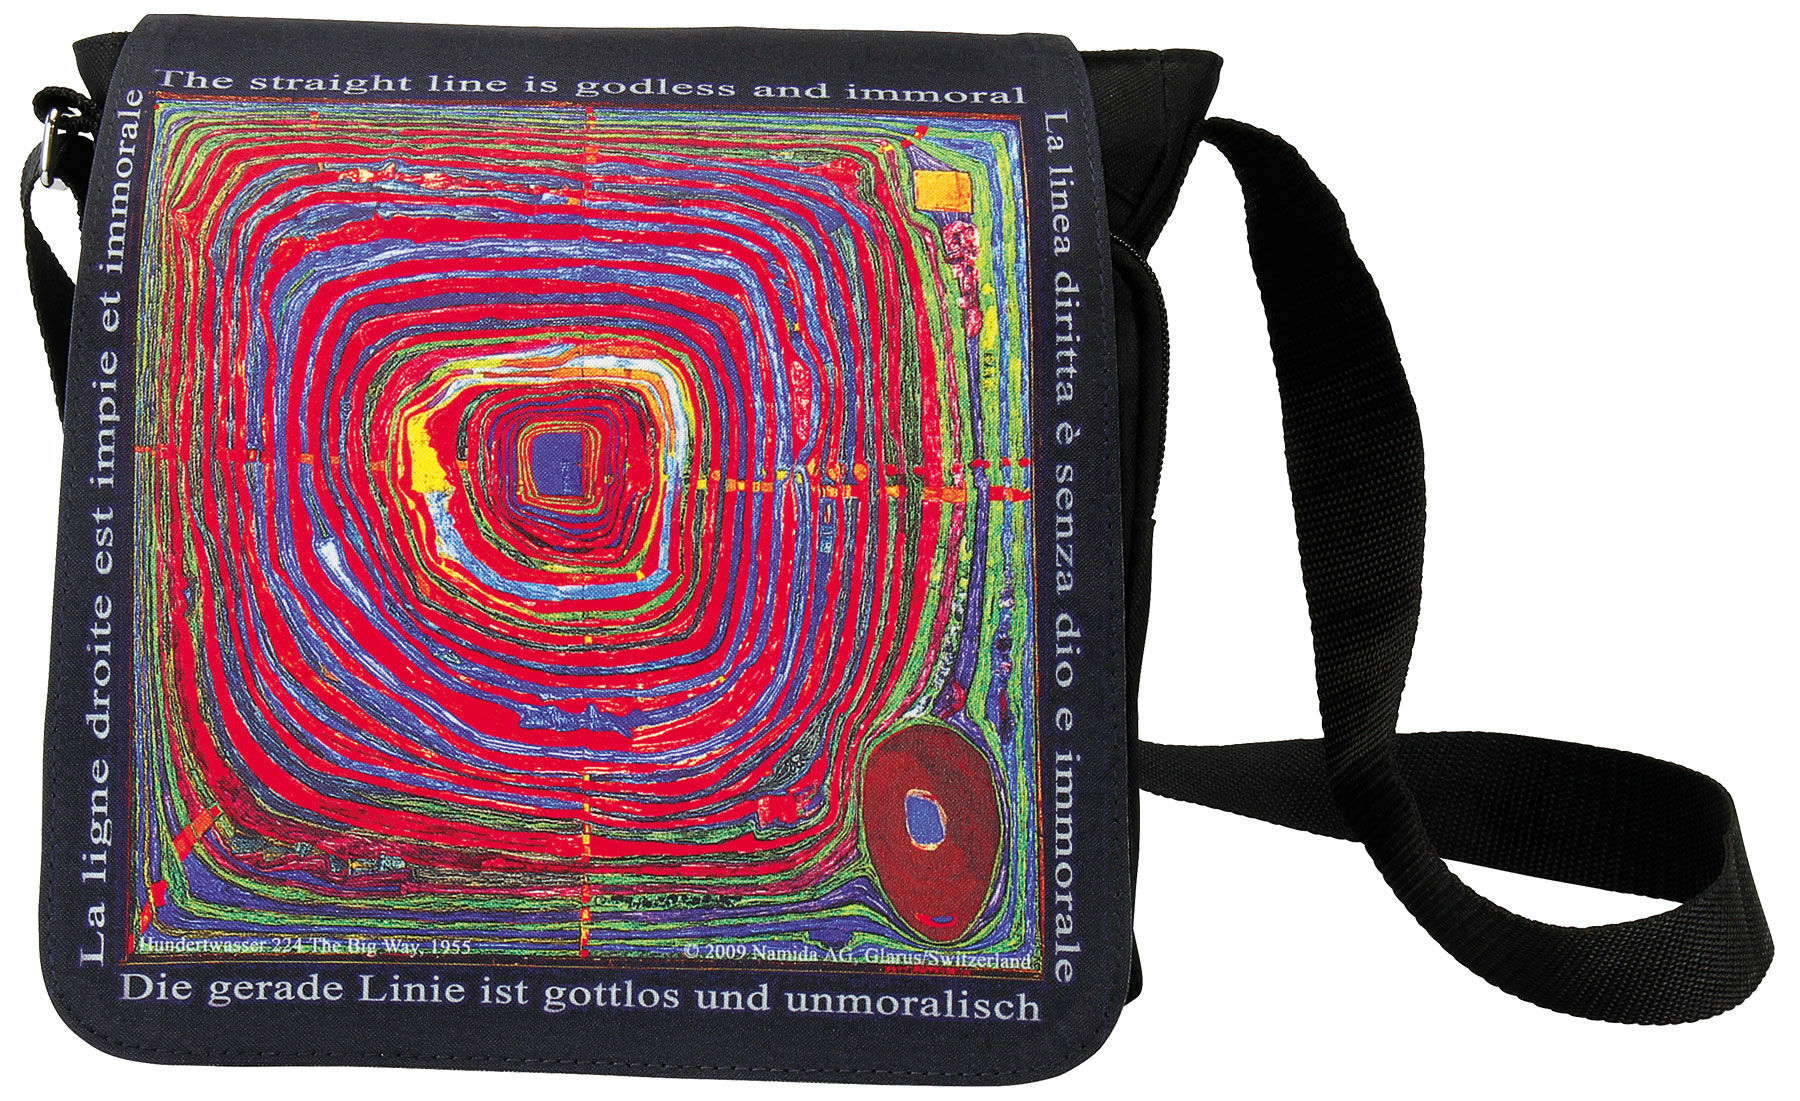 Shoulder bag "(224) The Great Way" by Friedensreich Hundertwasser